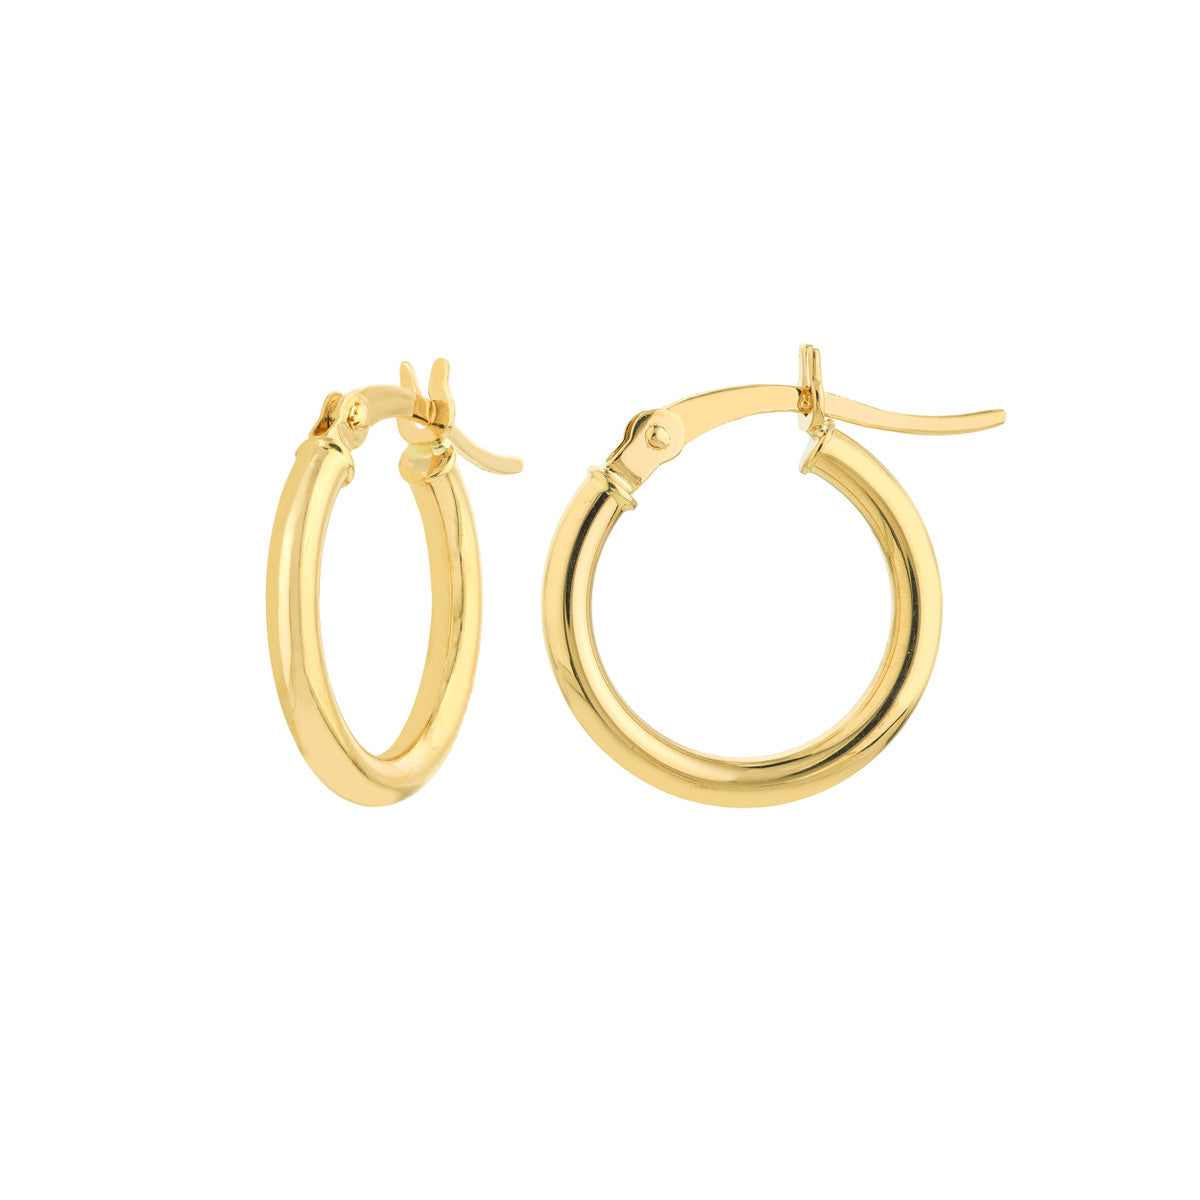 15mm Lightweight Hoop Earrings in Yellow Gold